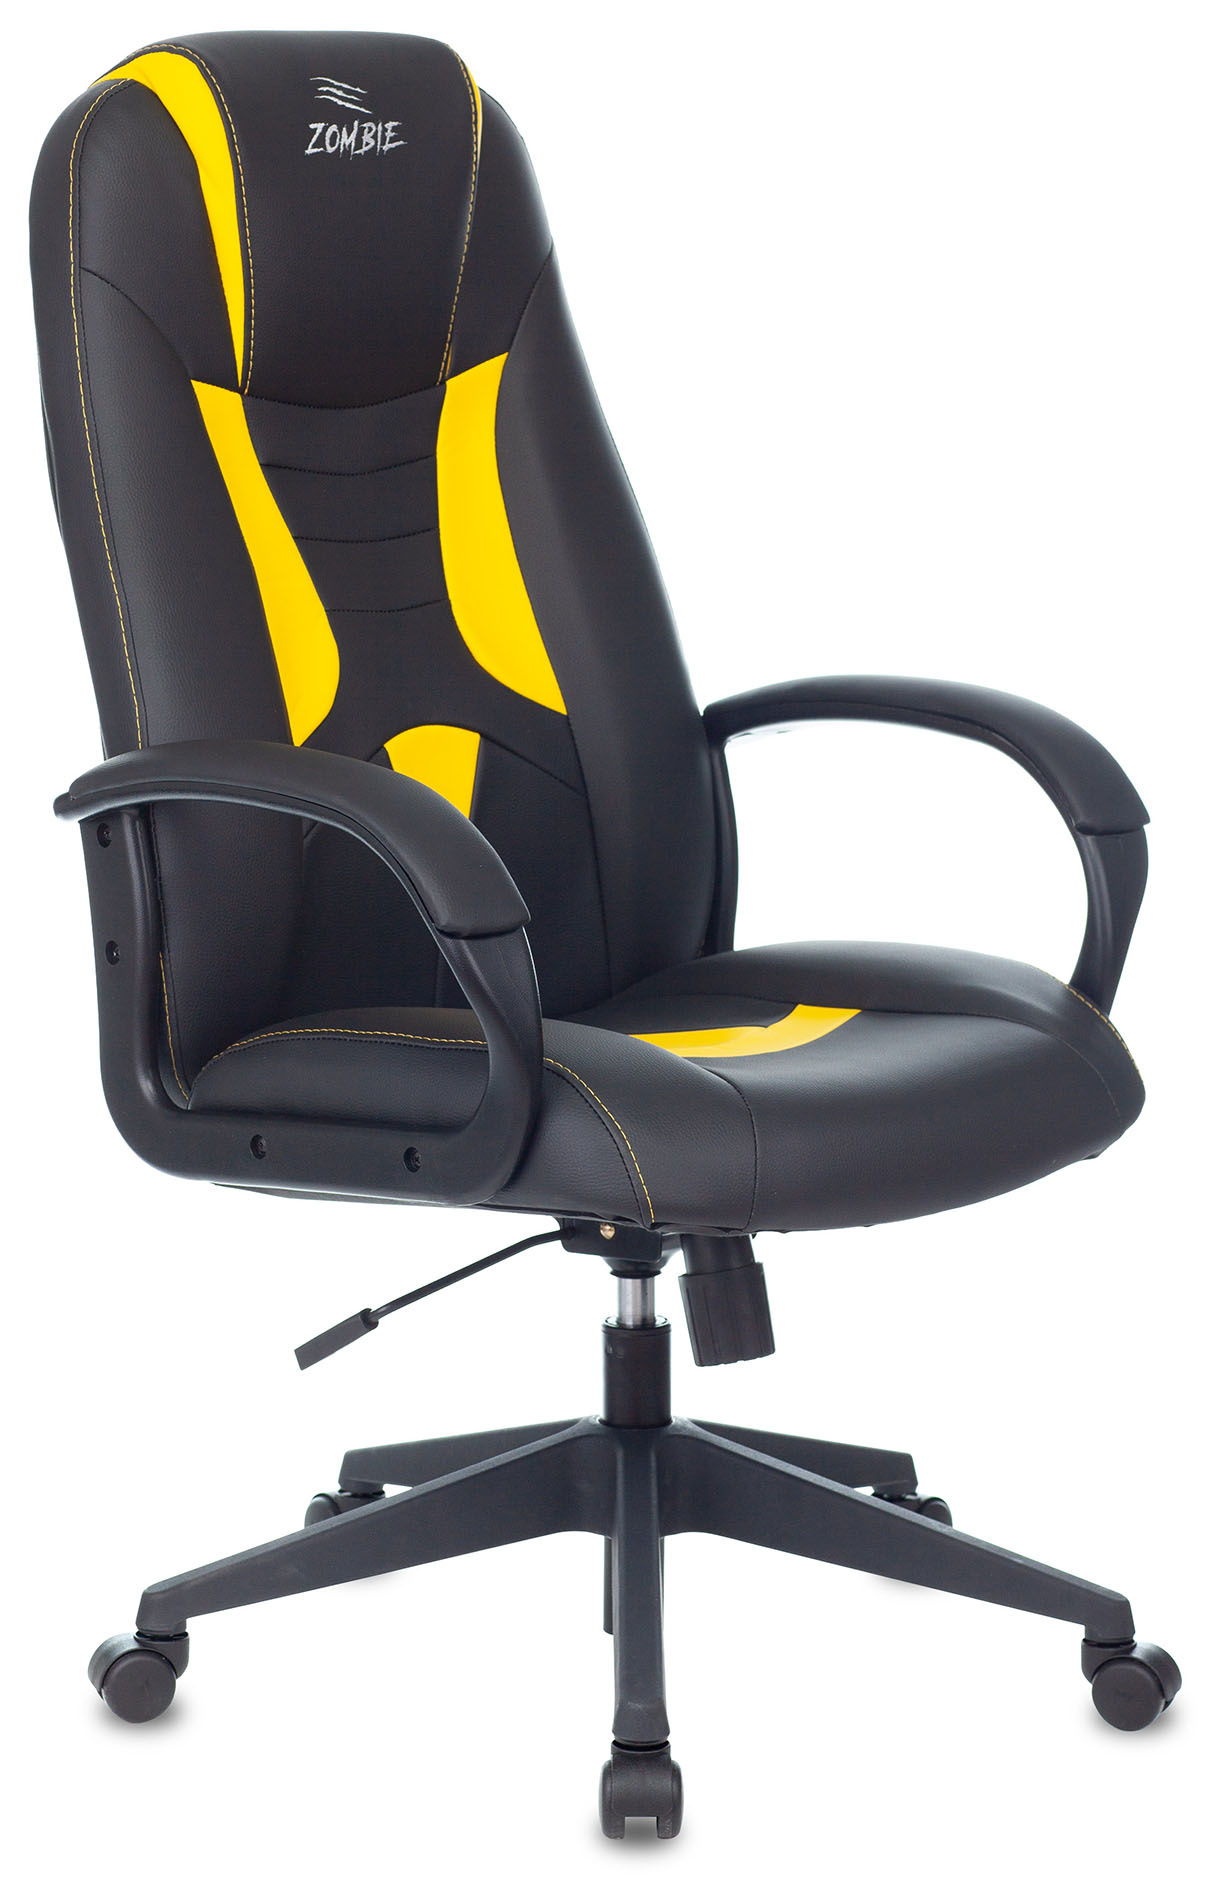 Кресло игровое Zombie 8 черный/желтый эко.кожа крестов. пластик